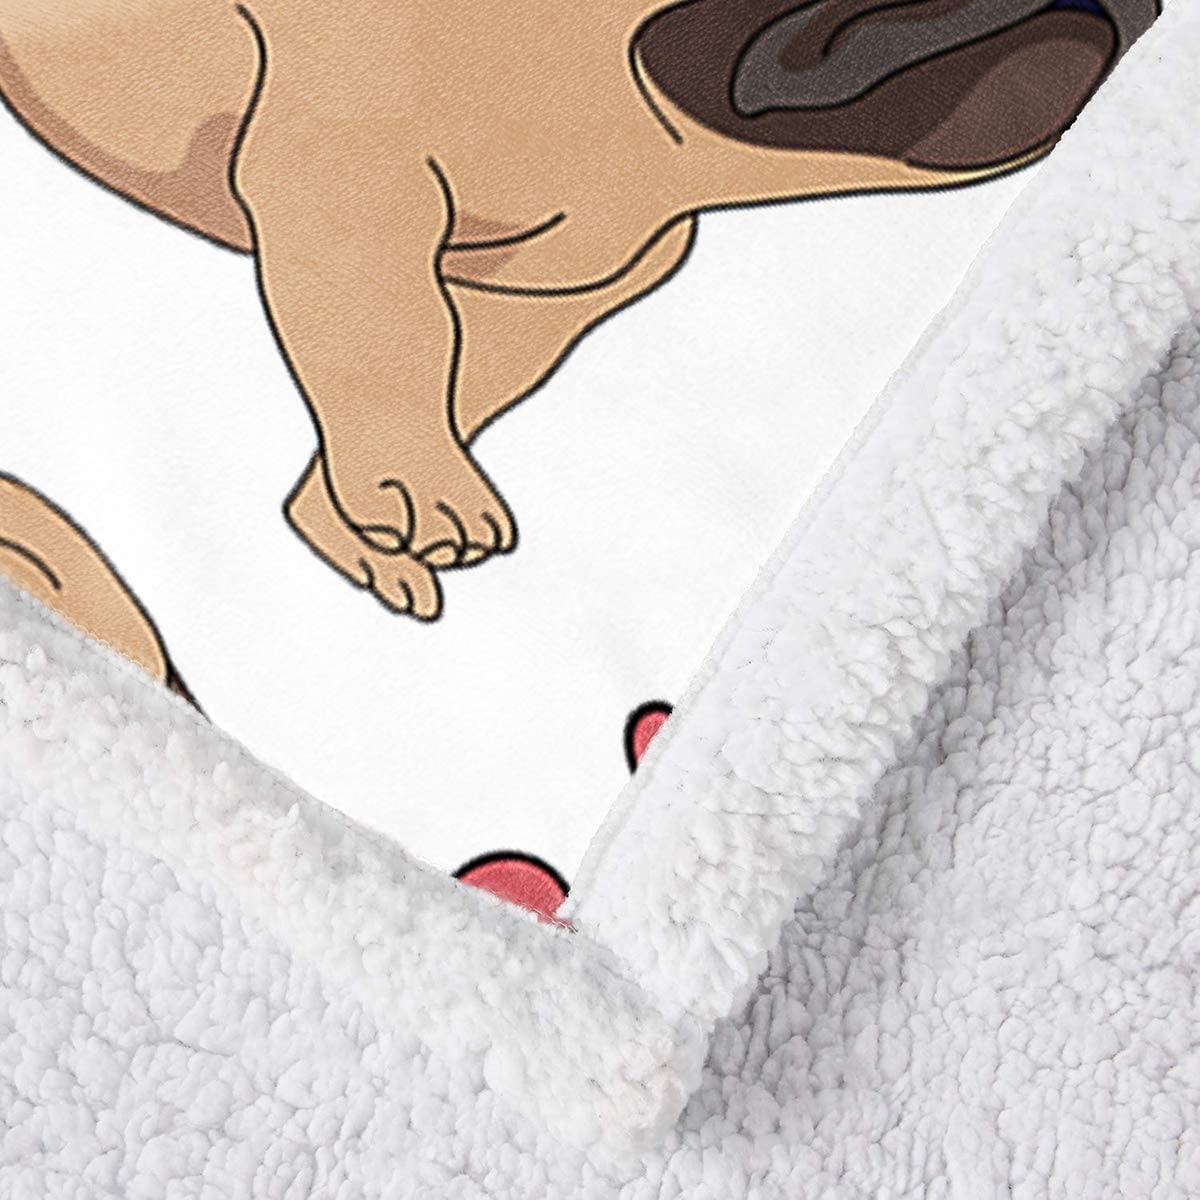 WONGS BEDDING Pug Dog Printed Sherpa Blanket - Wongs bedding